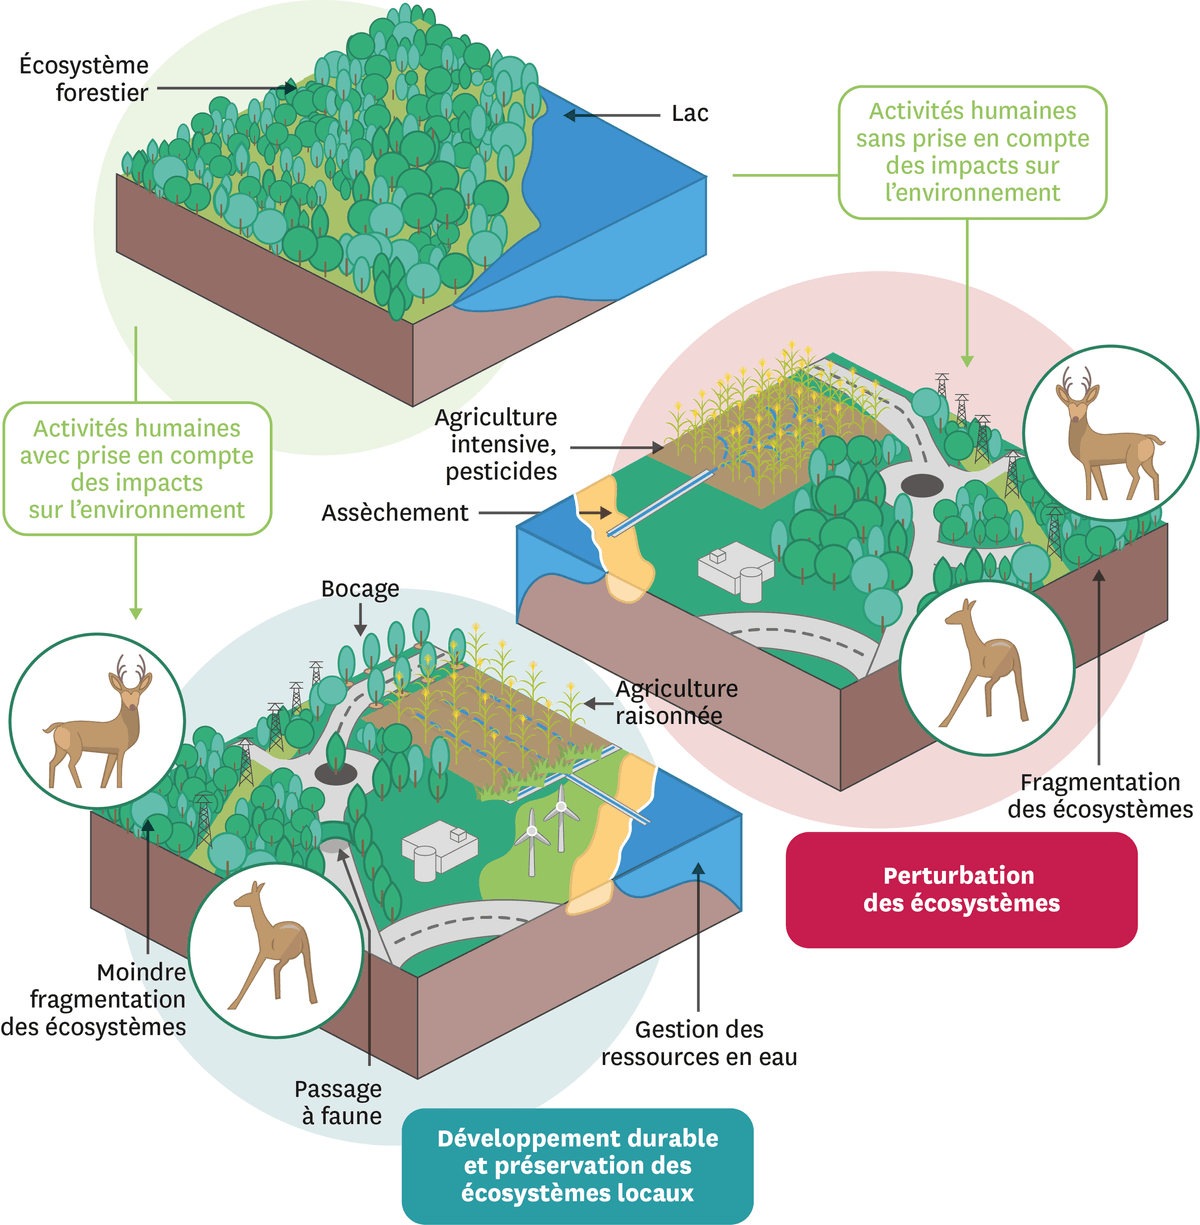 Schéma du développement, des préservations et de pérturbation des ecosystèmes.